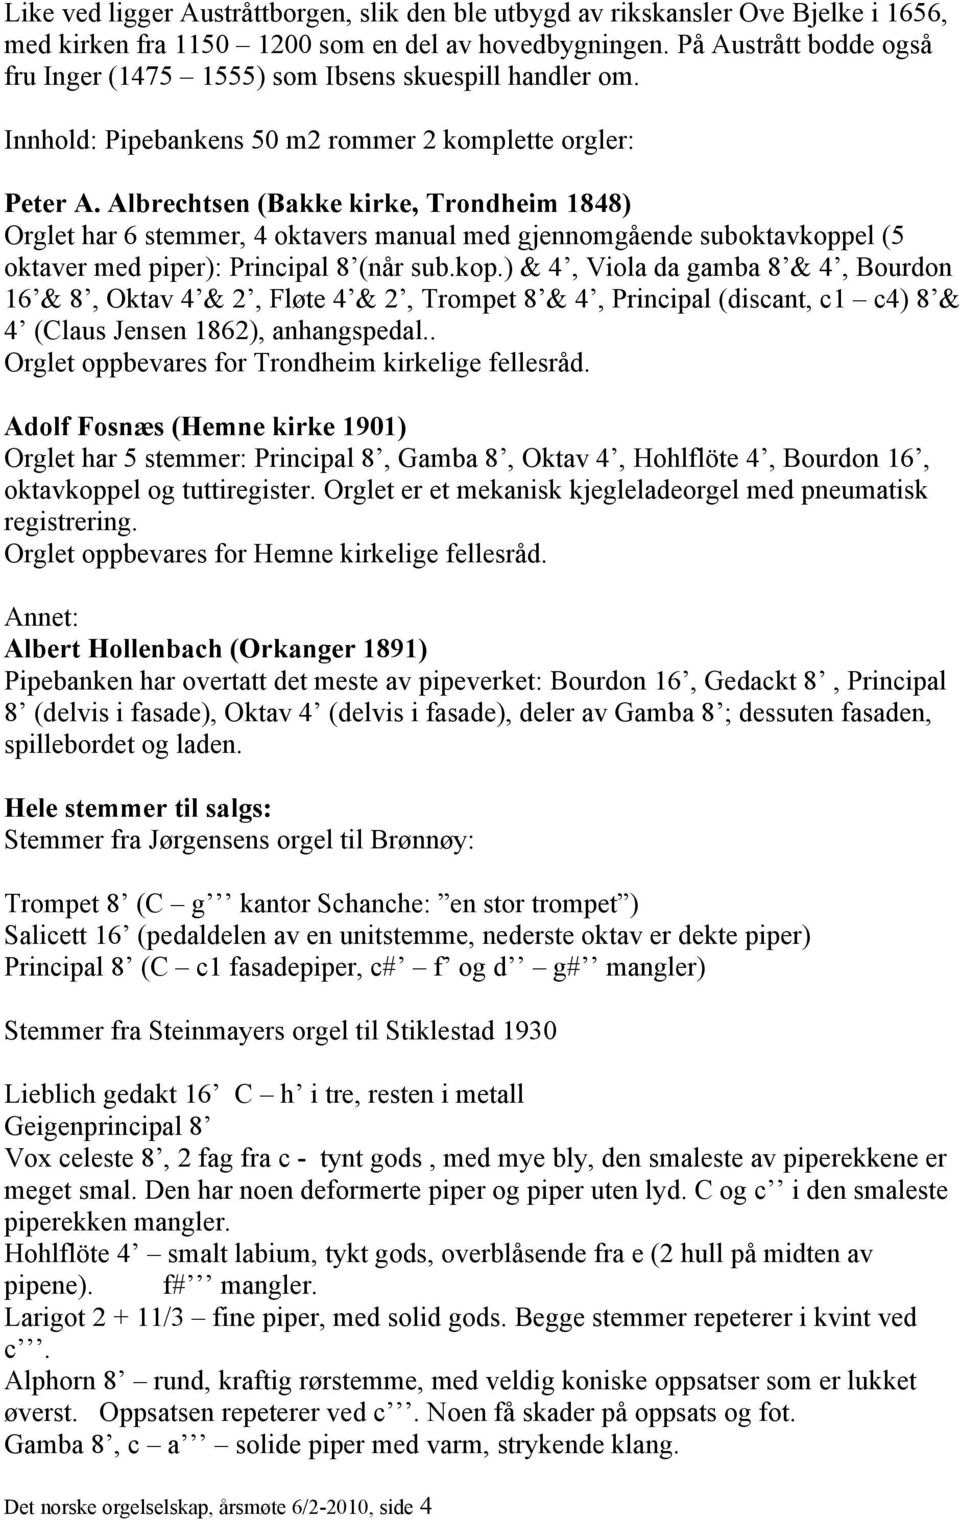 Albrechtsen (Bakke kirke, Trondheim 1848) Orglet har 6 stemmer, 4 oktavers manual med gjennomgående suboktavkopp